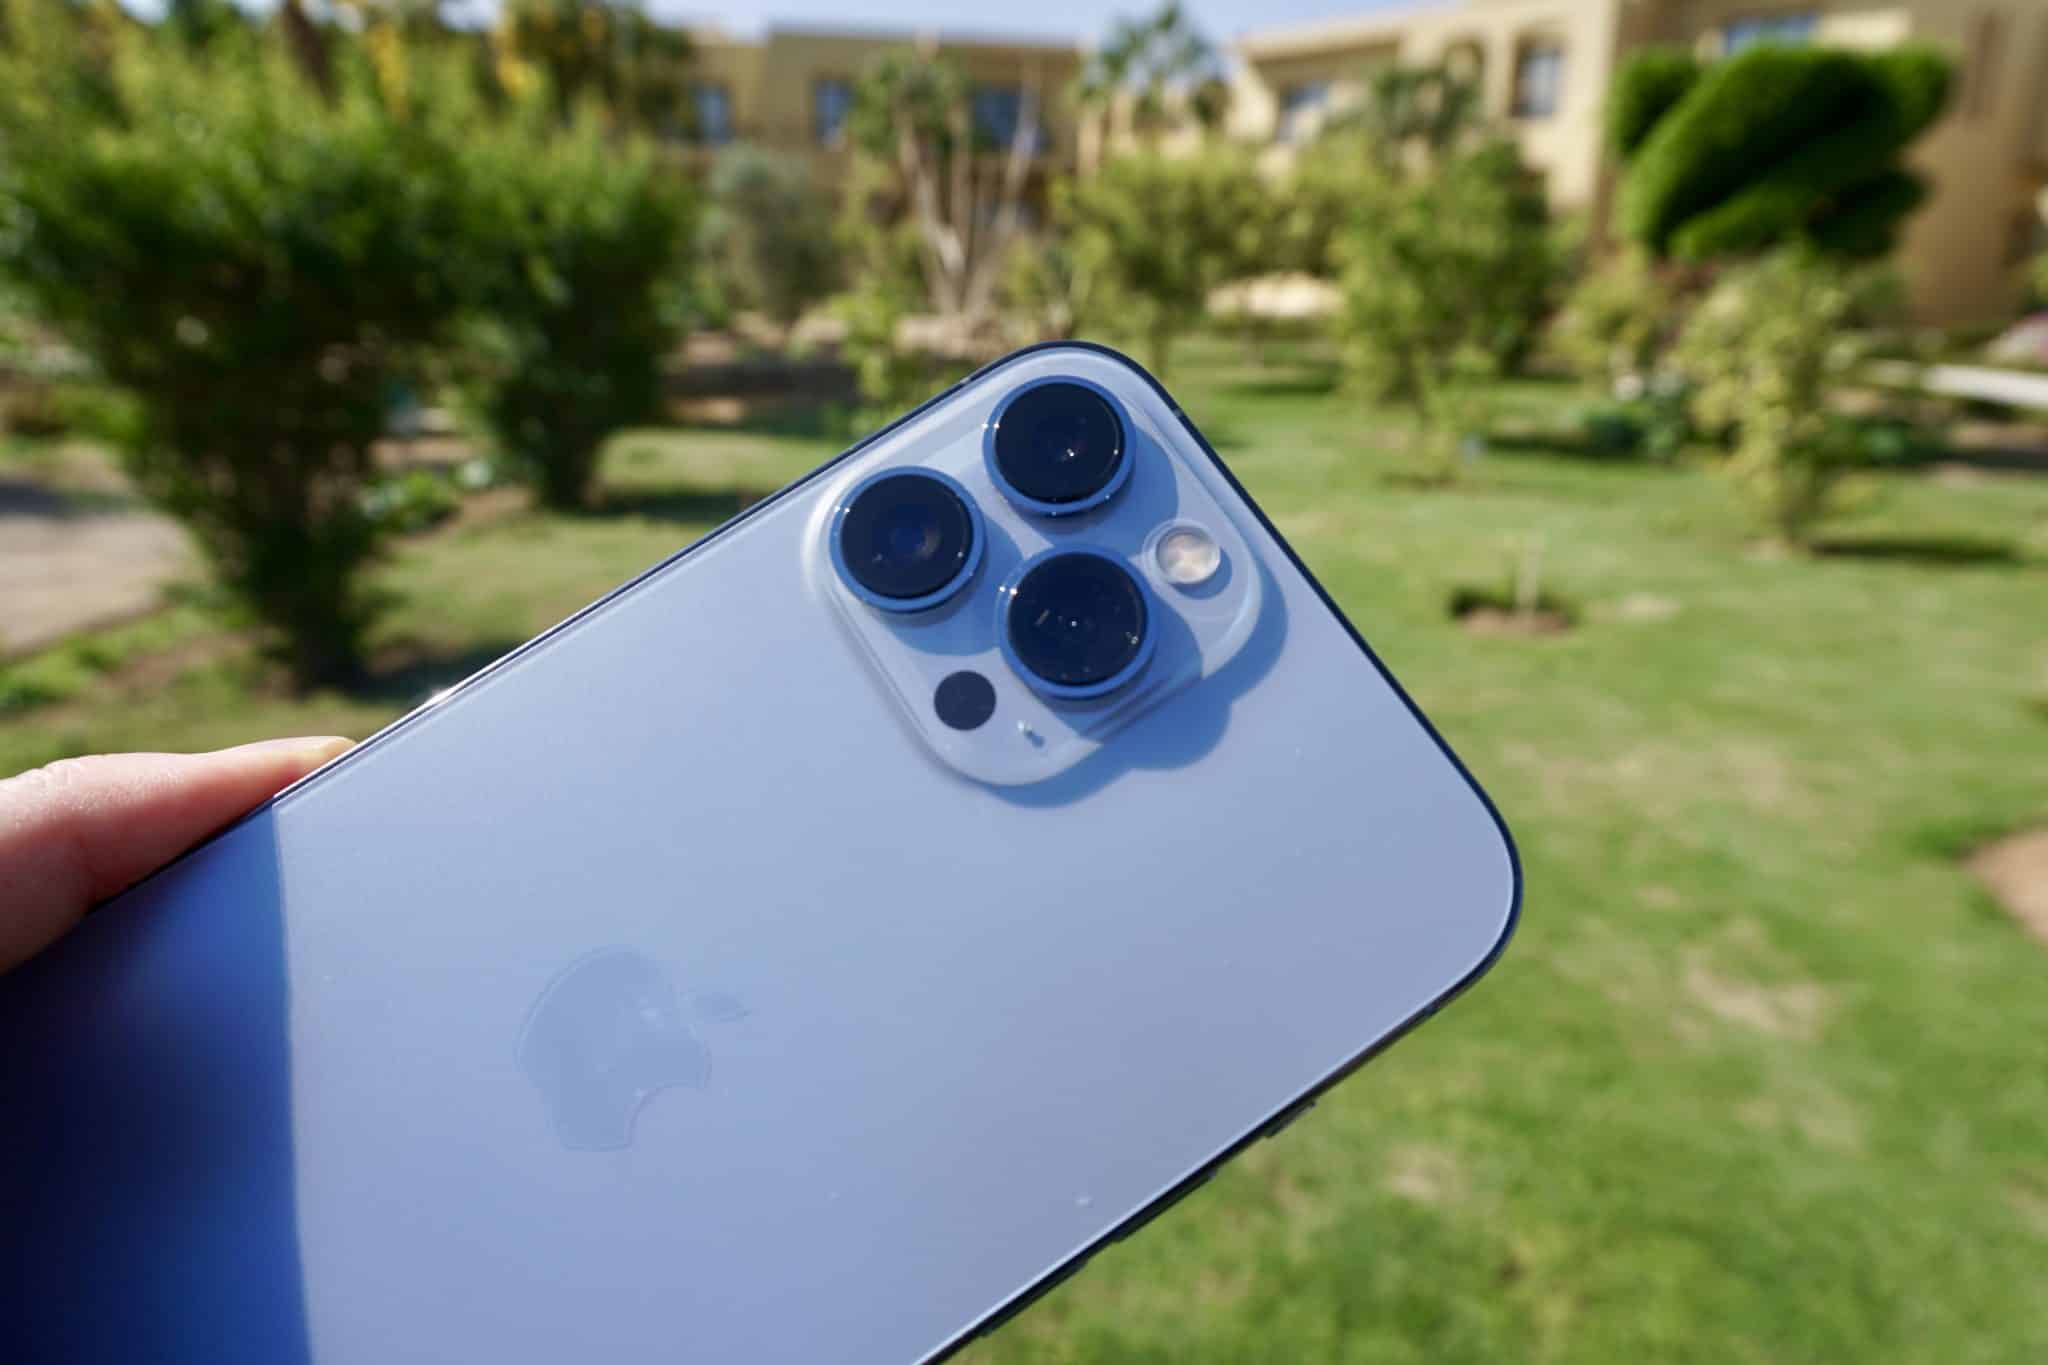 Das iPhone 13 Pro Max verfügt über ein verbessertes Kamerasystem mit einem neuen Weitwinkelobjektiv, mit dem man deutlich mehr Fläche auf Fotos festhalten kann.